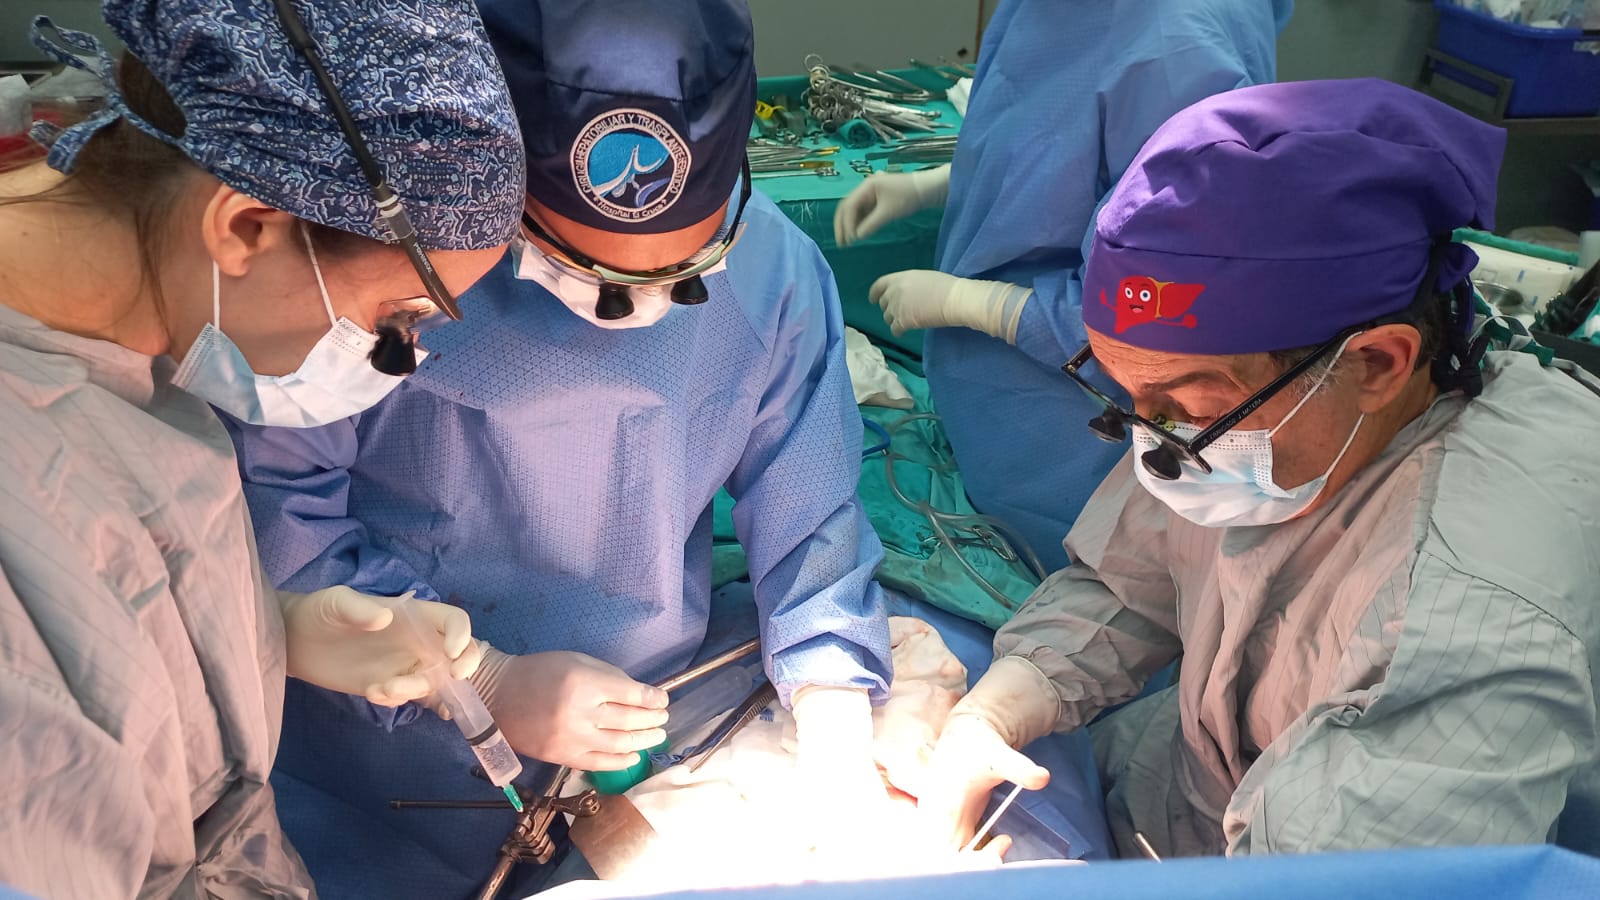 El Hospital El Cruce líder desde hace 10 años en trasplante hepático en la Argentina